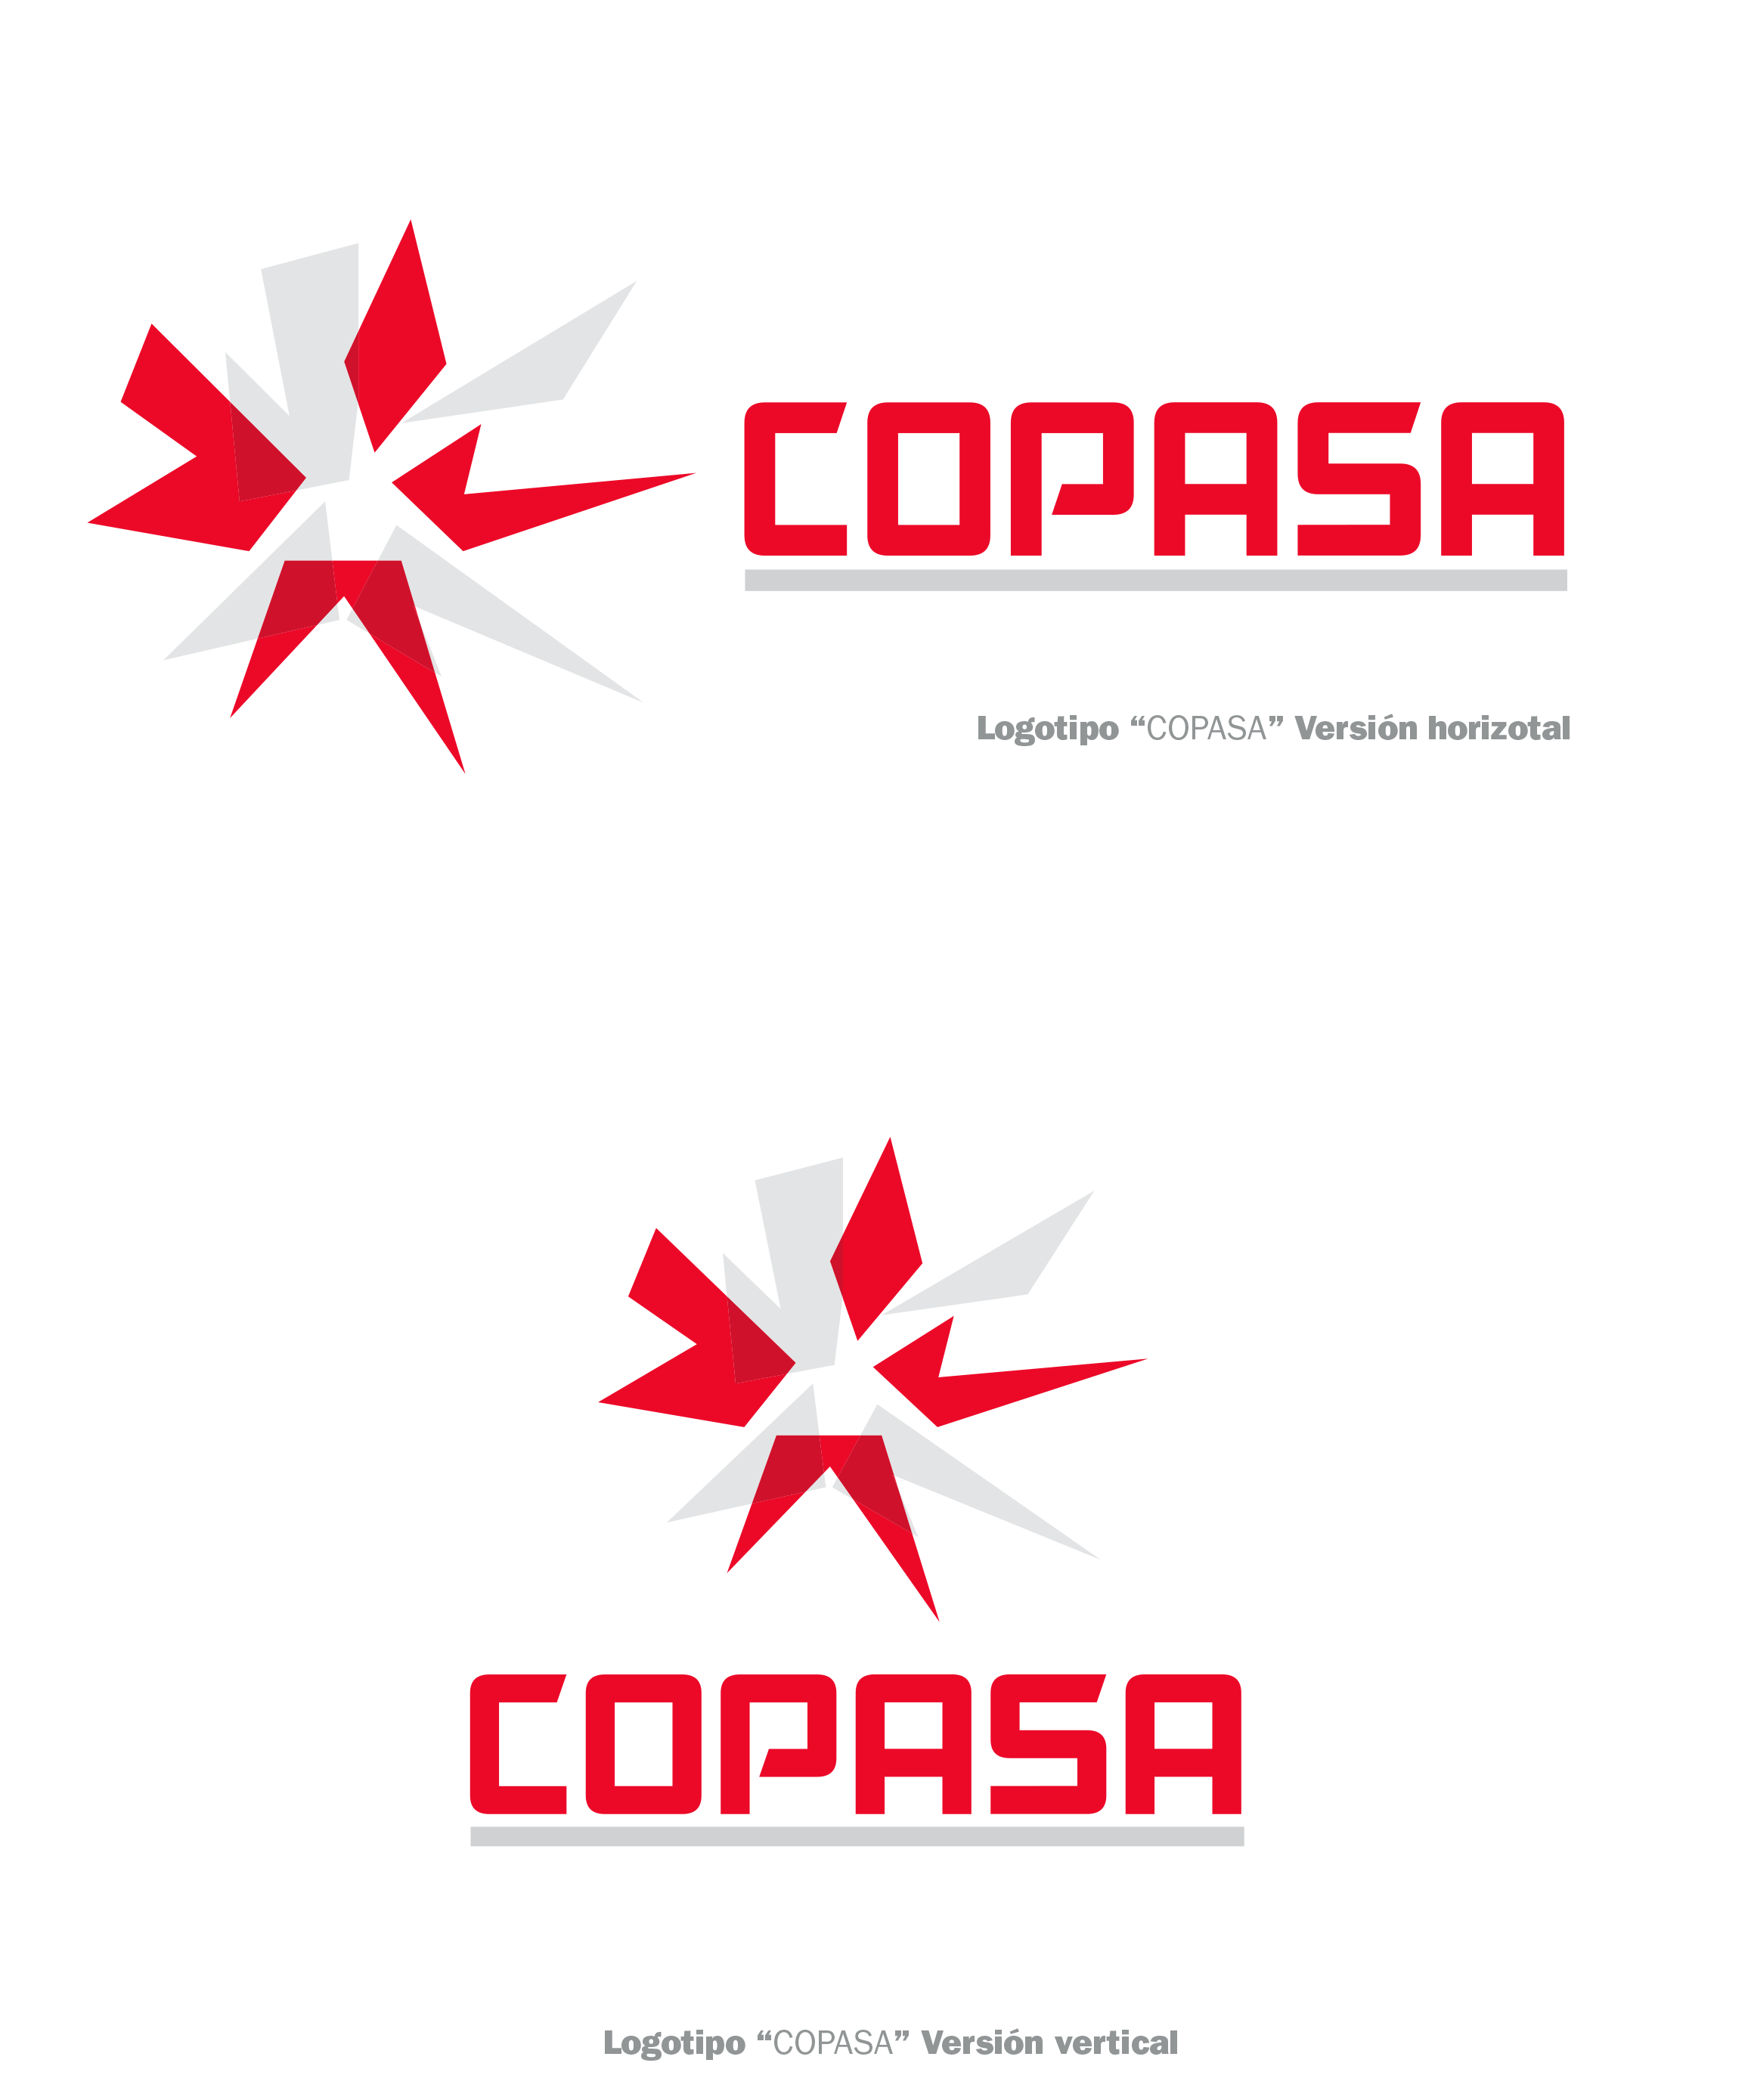 Nueva imagen Copasa 2016